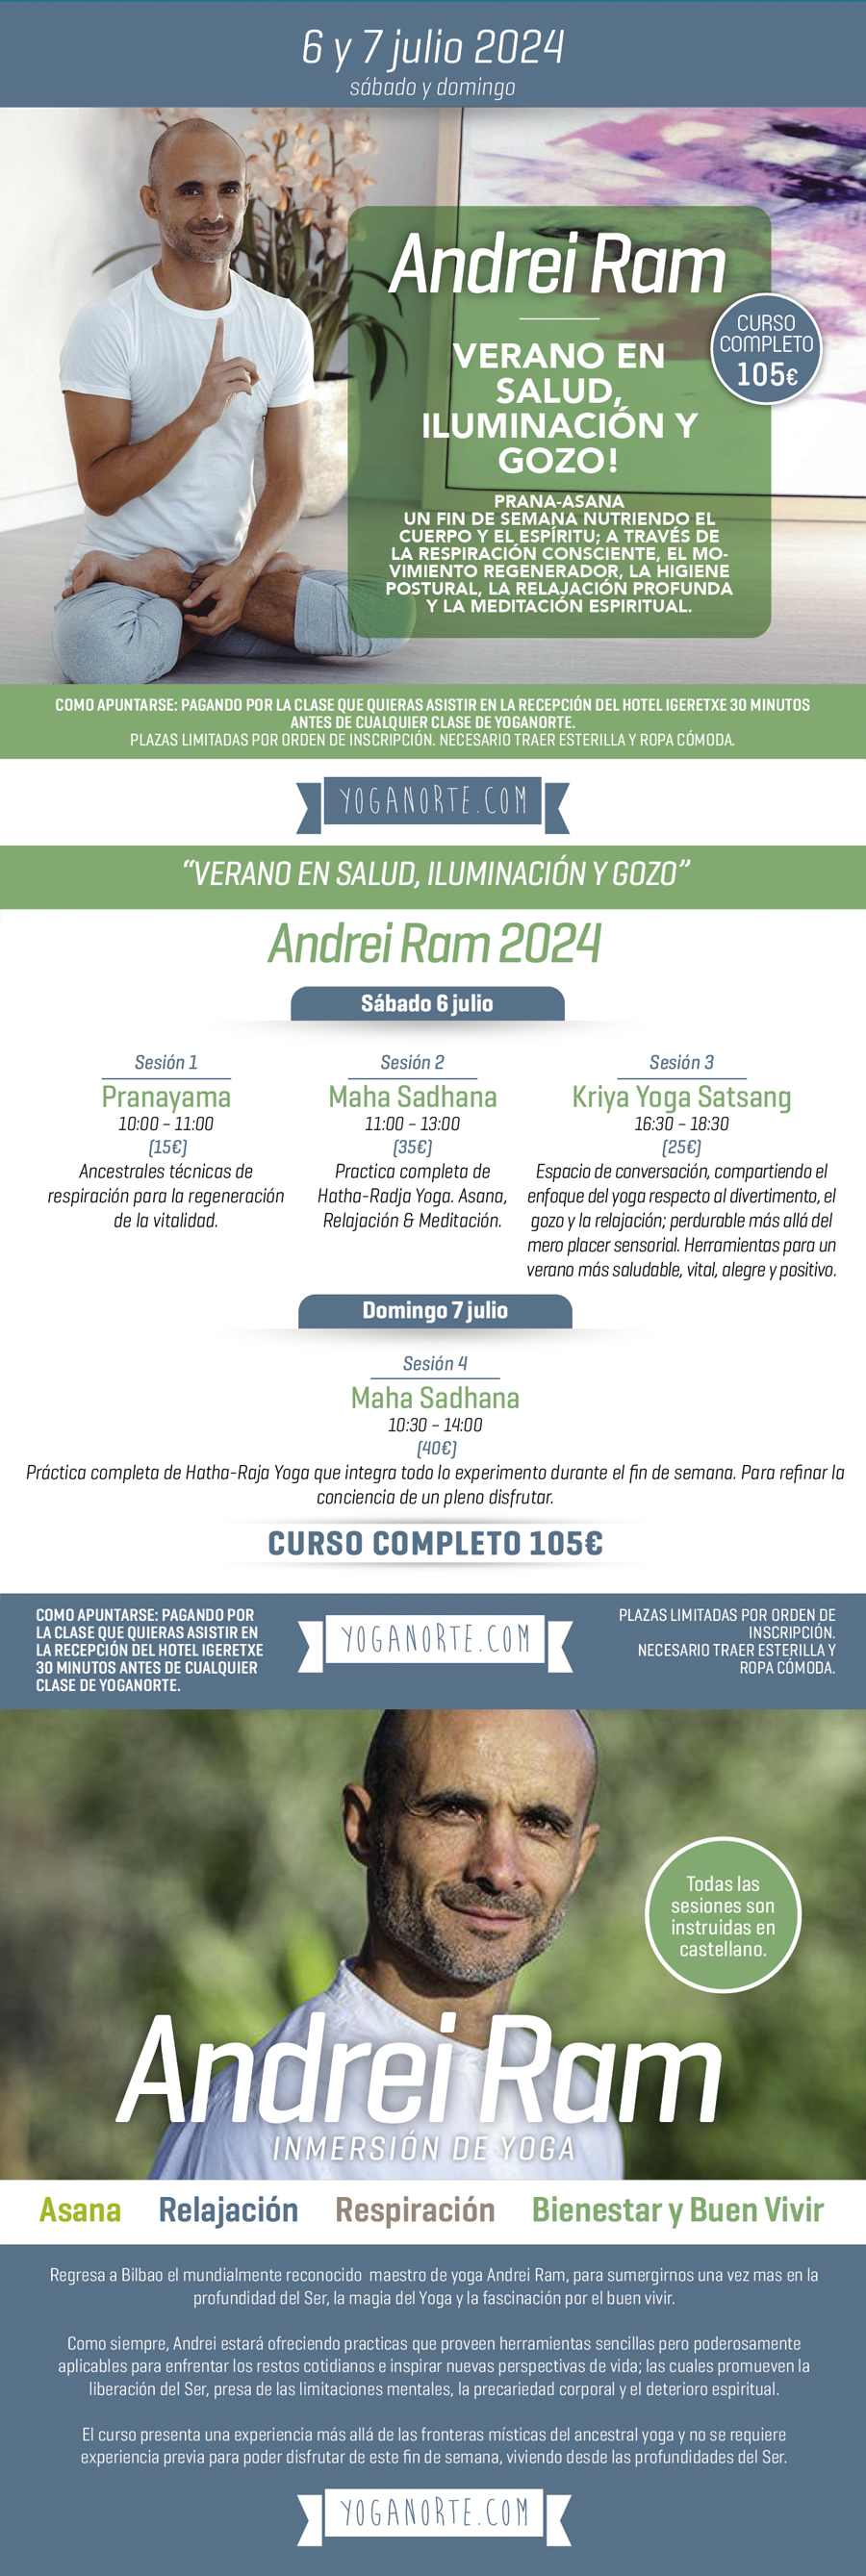 ANDREI RAM JULIO 2024